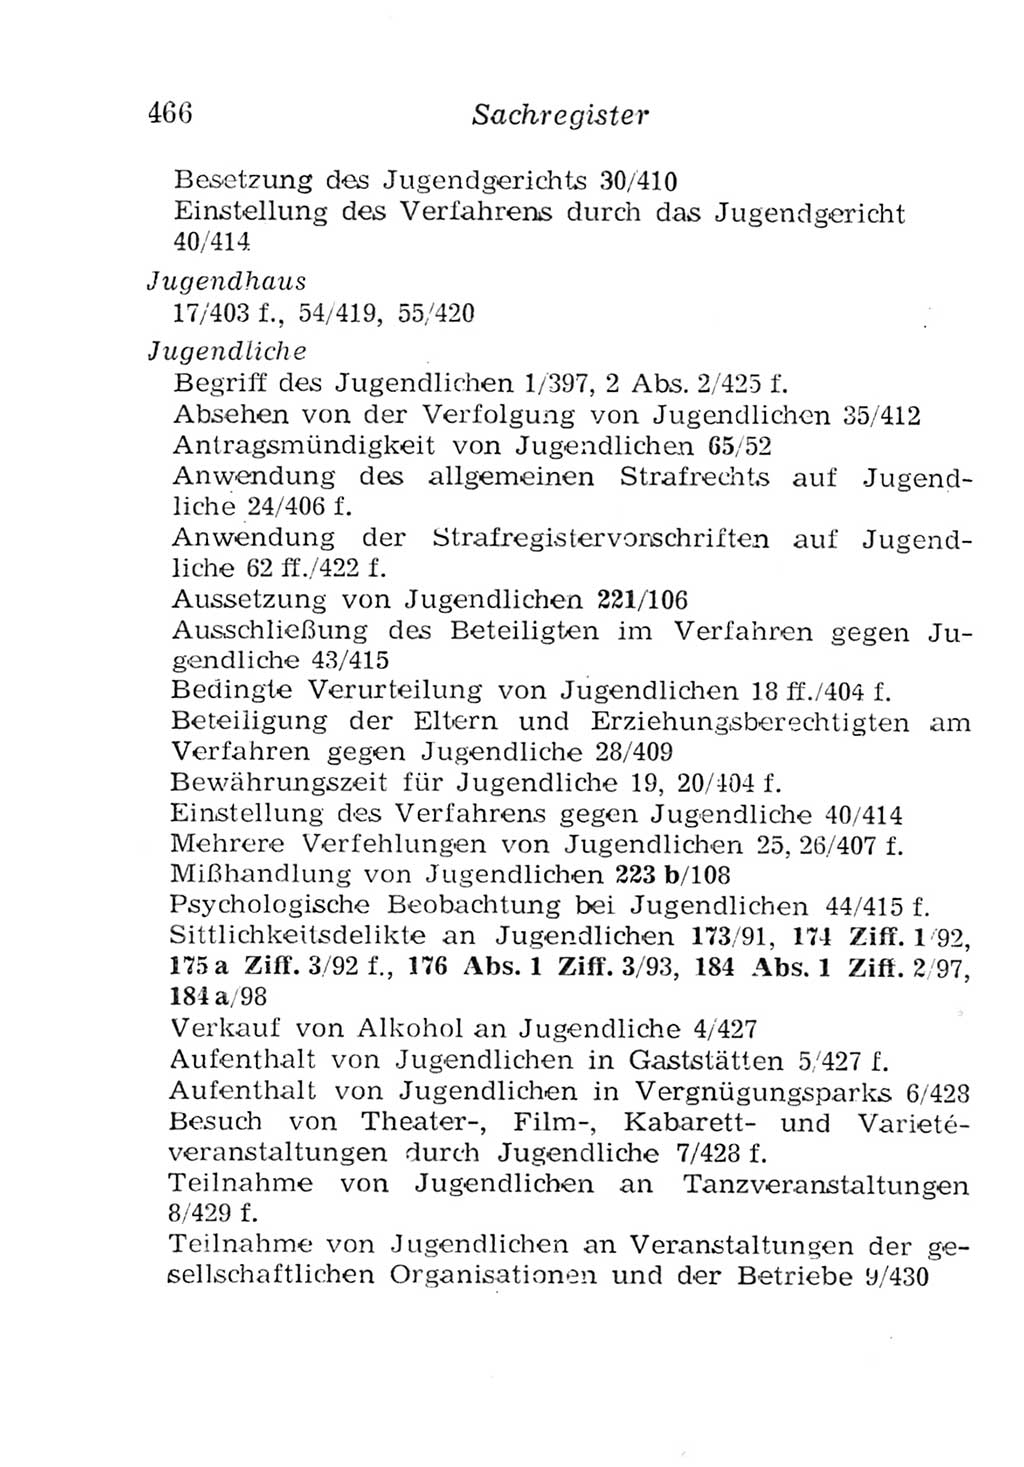 Strafgesetzbuch (StGB) und andere Strafgesetze [Deutsche Demokratische Republik (DDR)] 1957, Seite 466 (StGB Strafges. DDR 1957, S. 466)